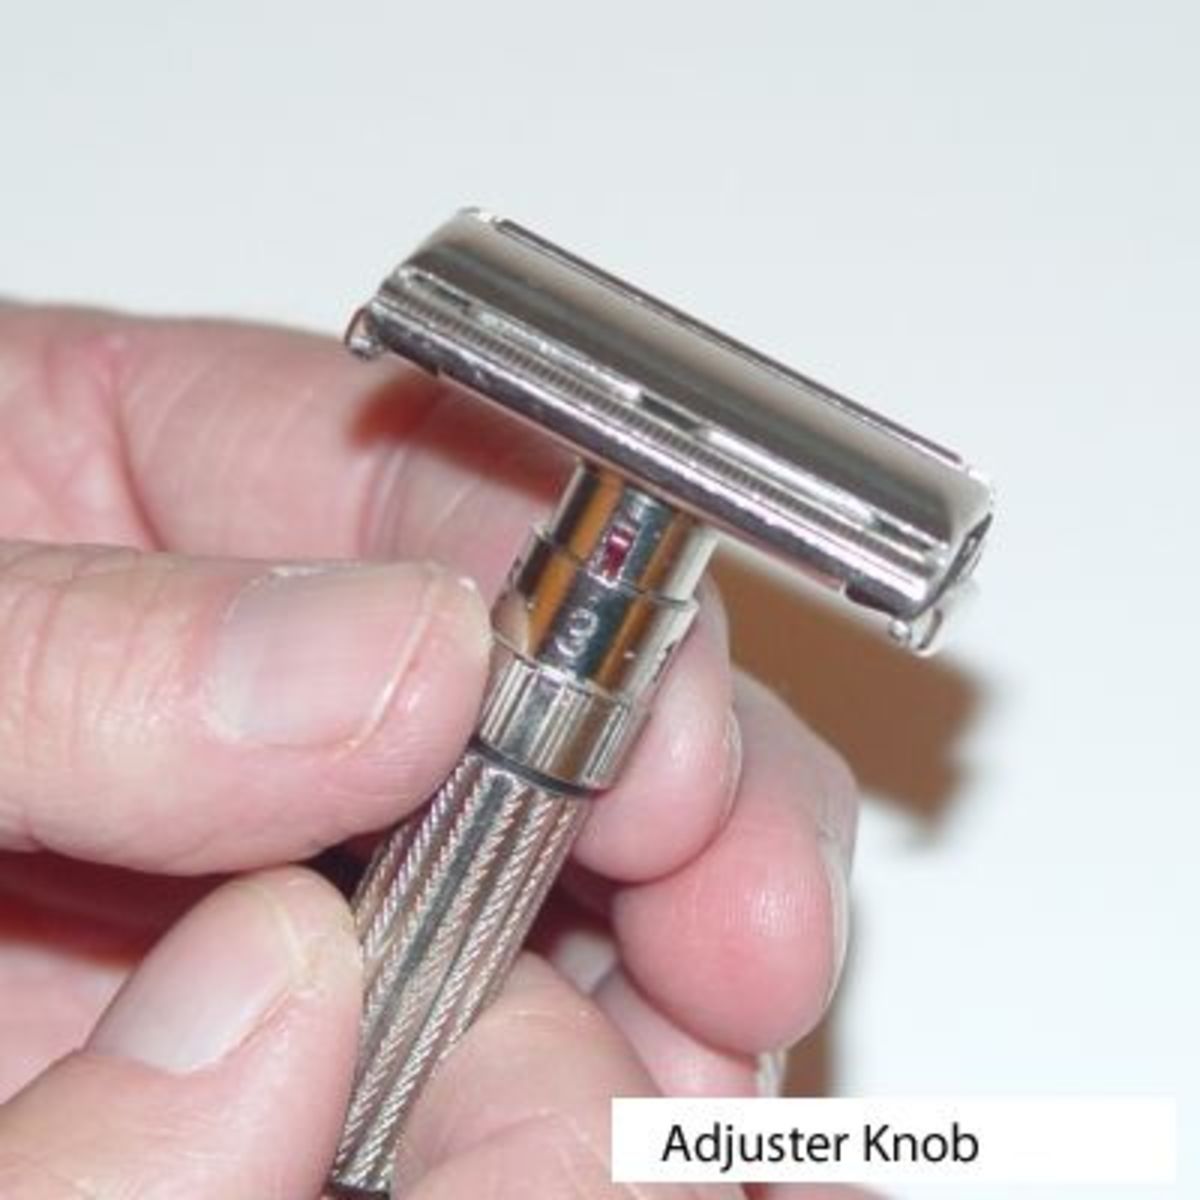 Adjuster knob